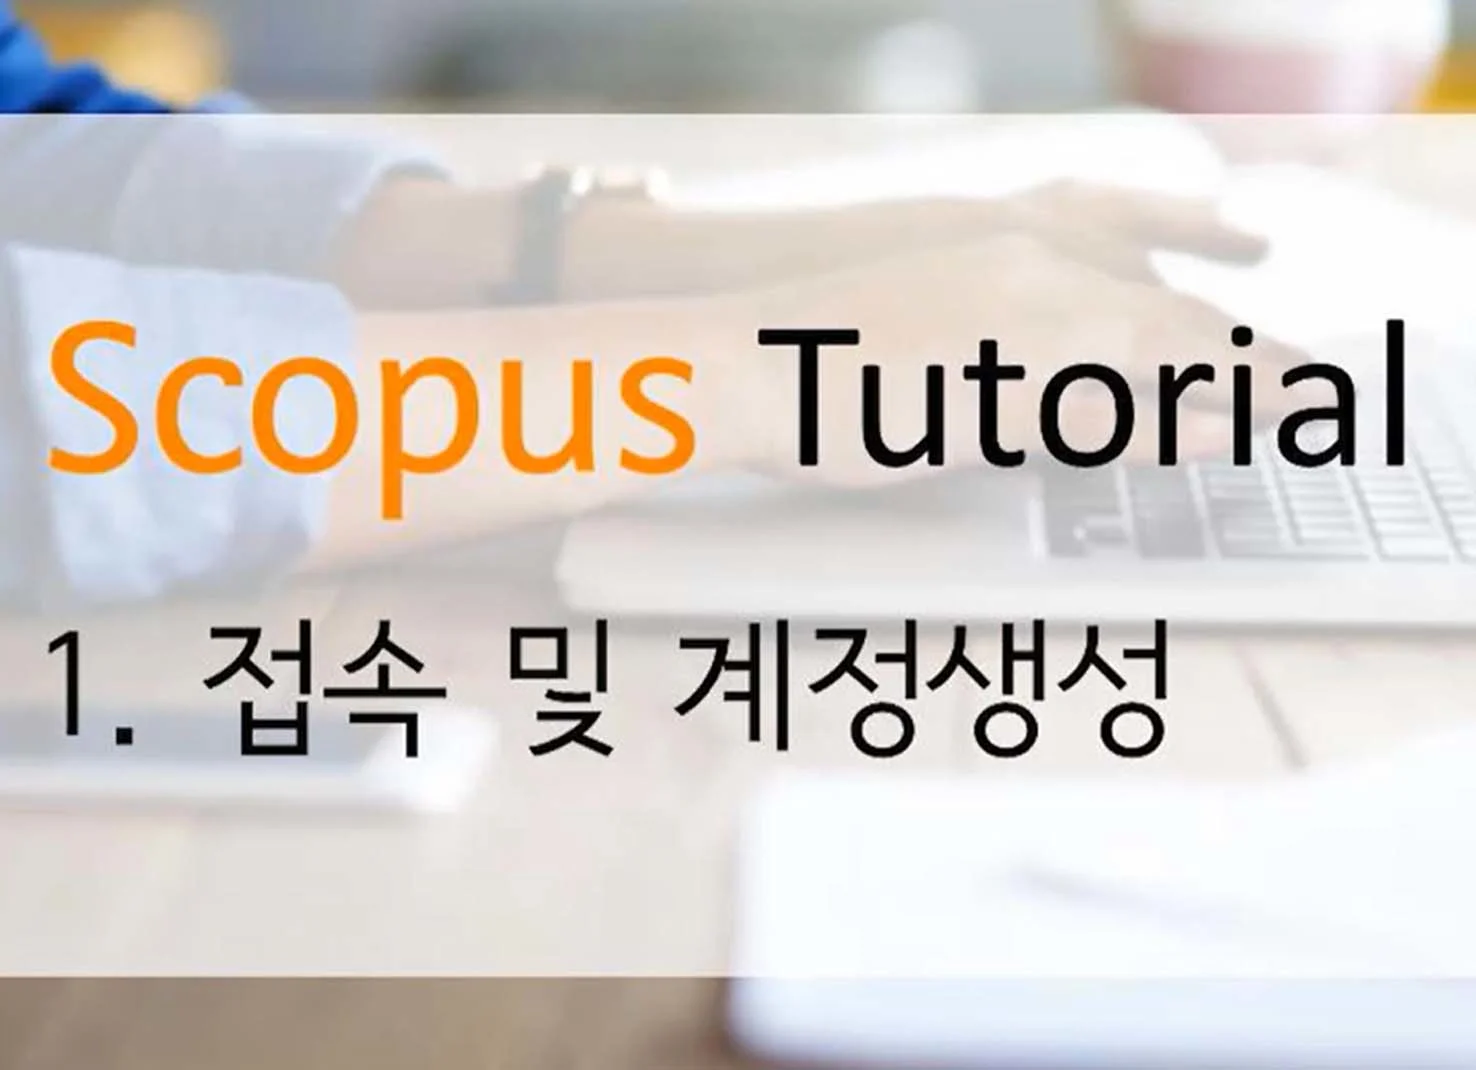  Scopus tutorial video korean